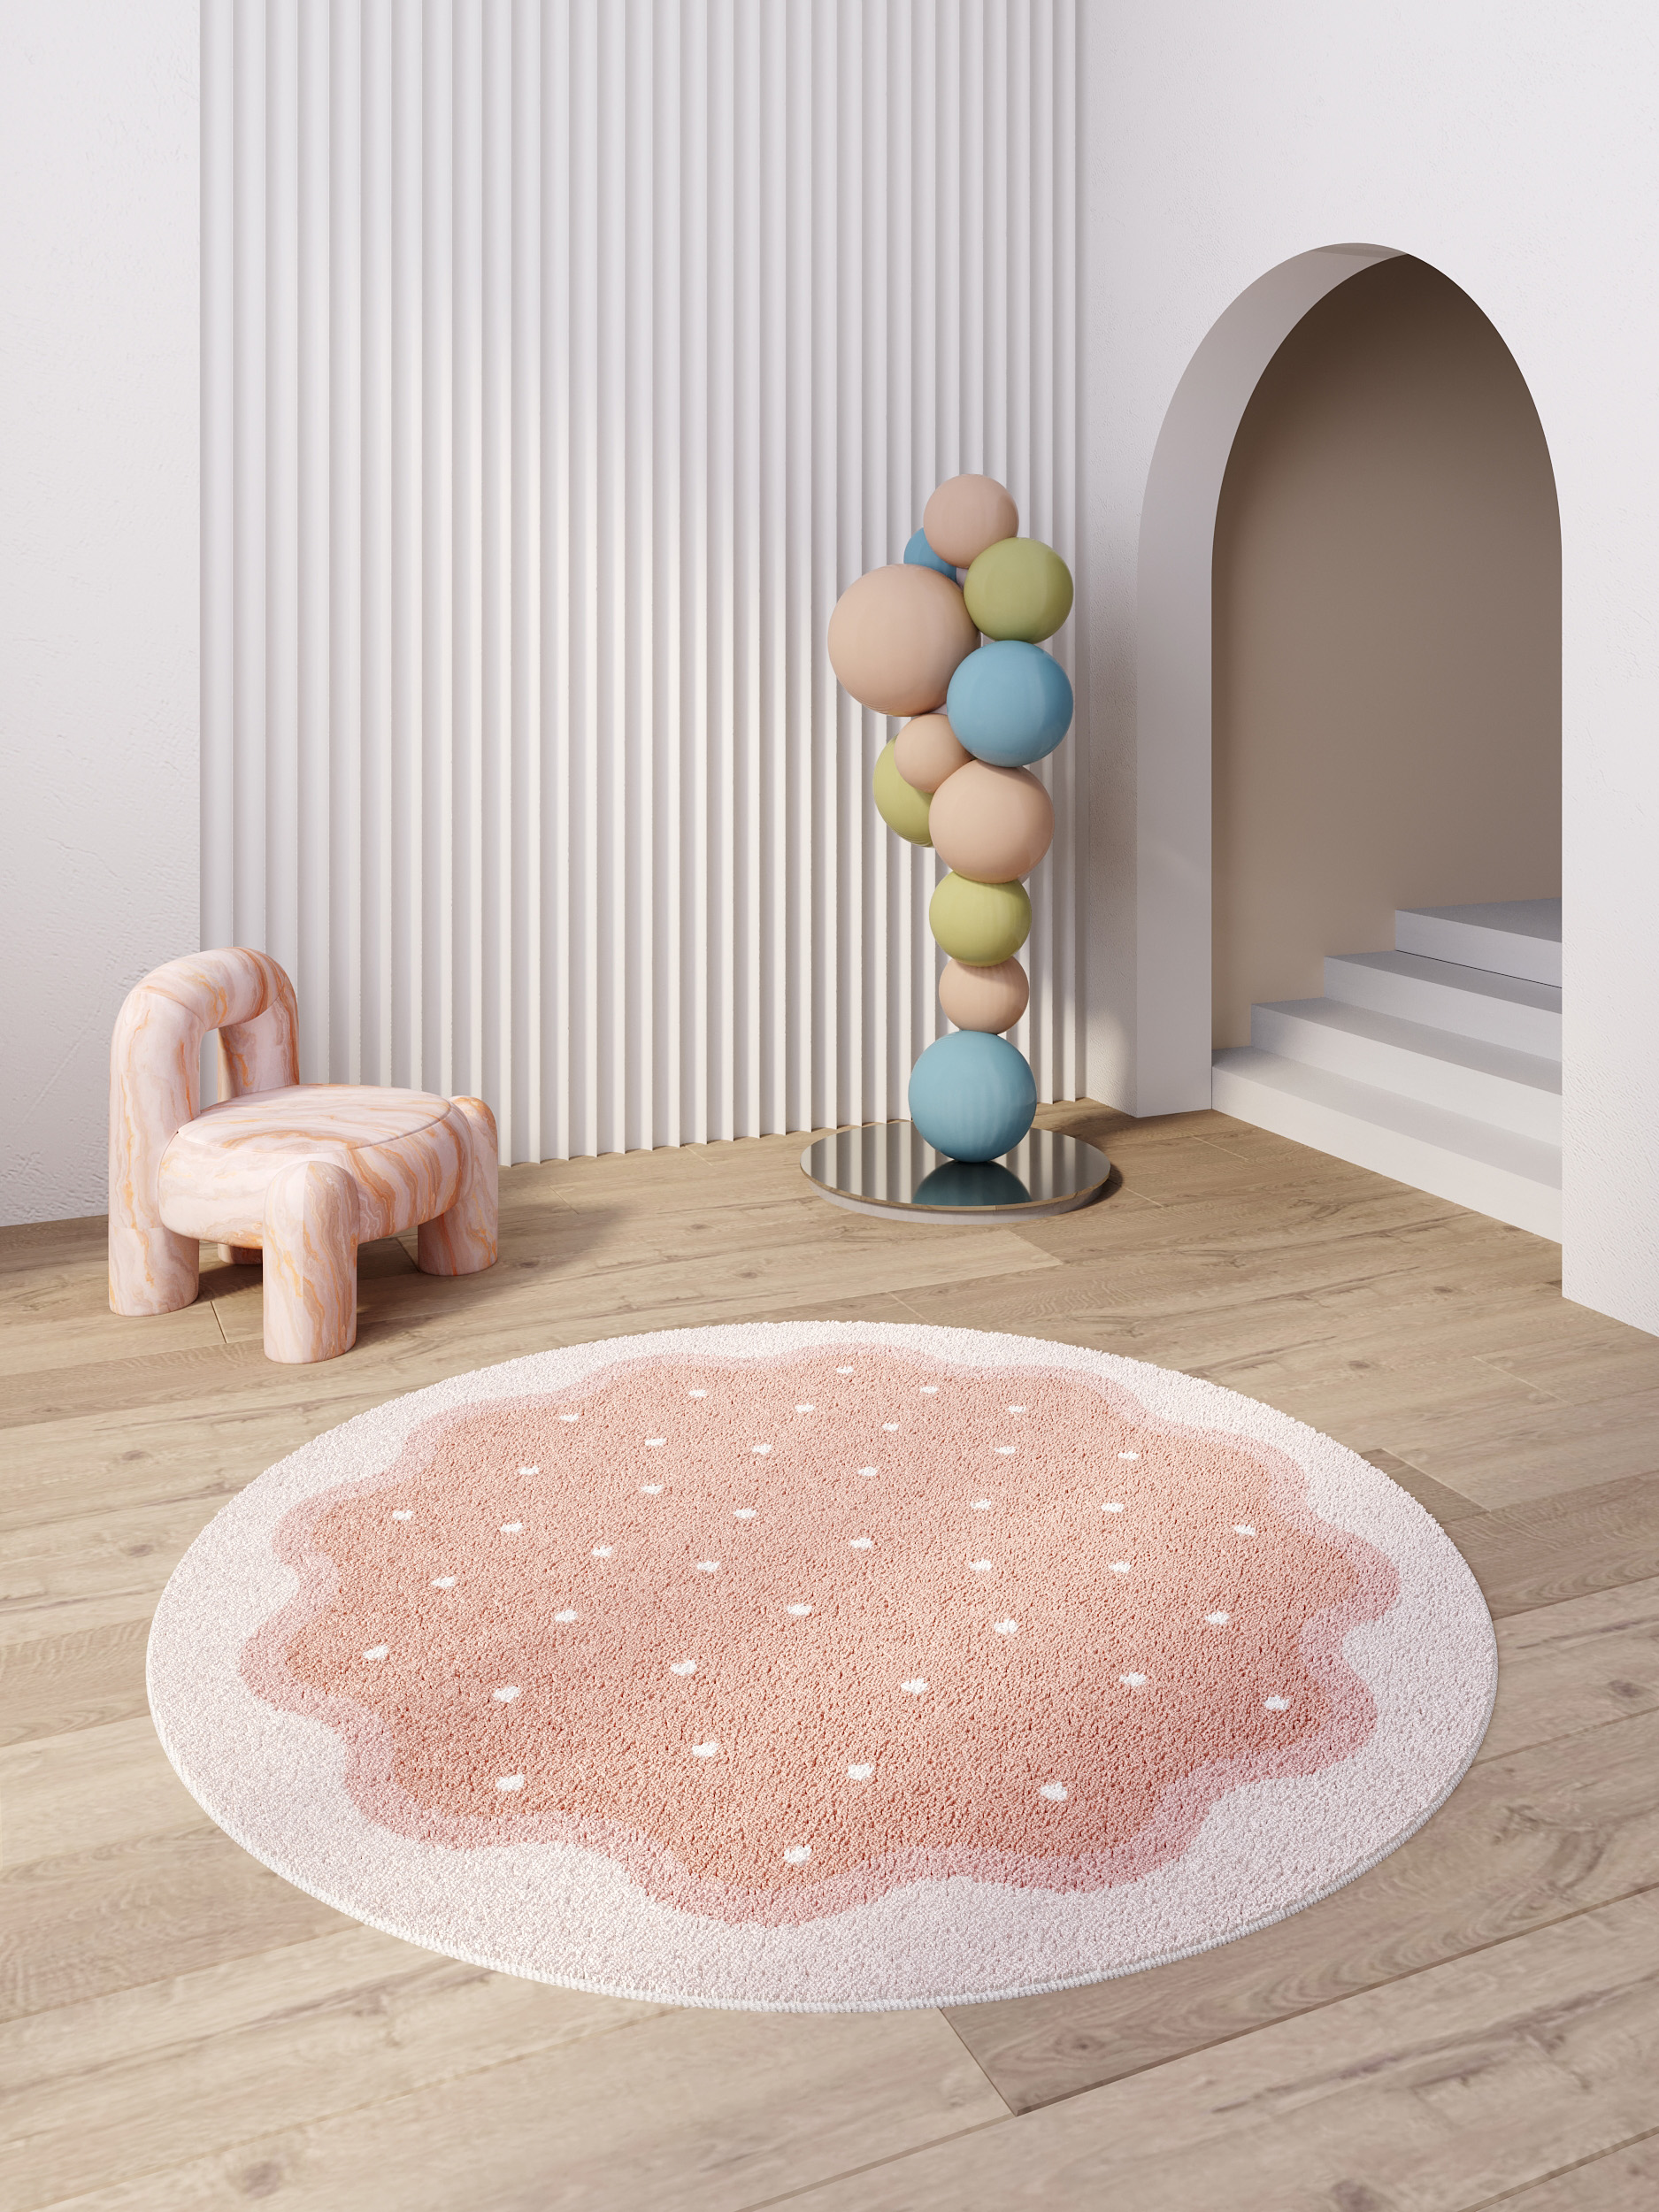 圓形地毯讓您的客廳和兒童房舒適而時尚